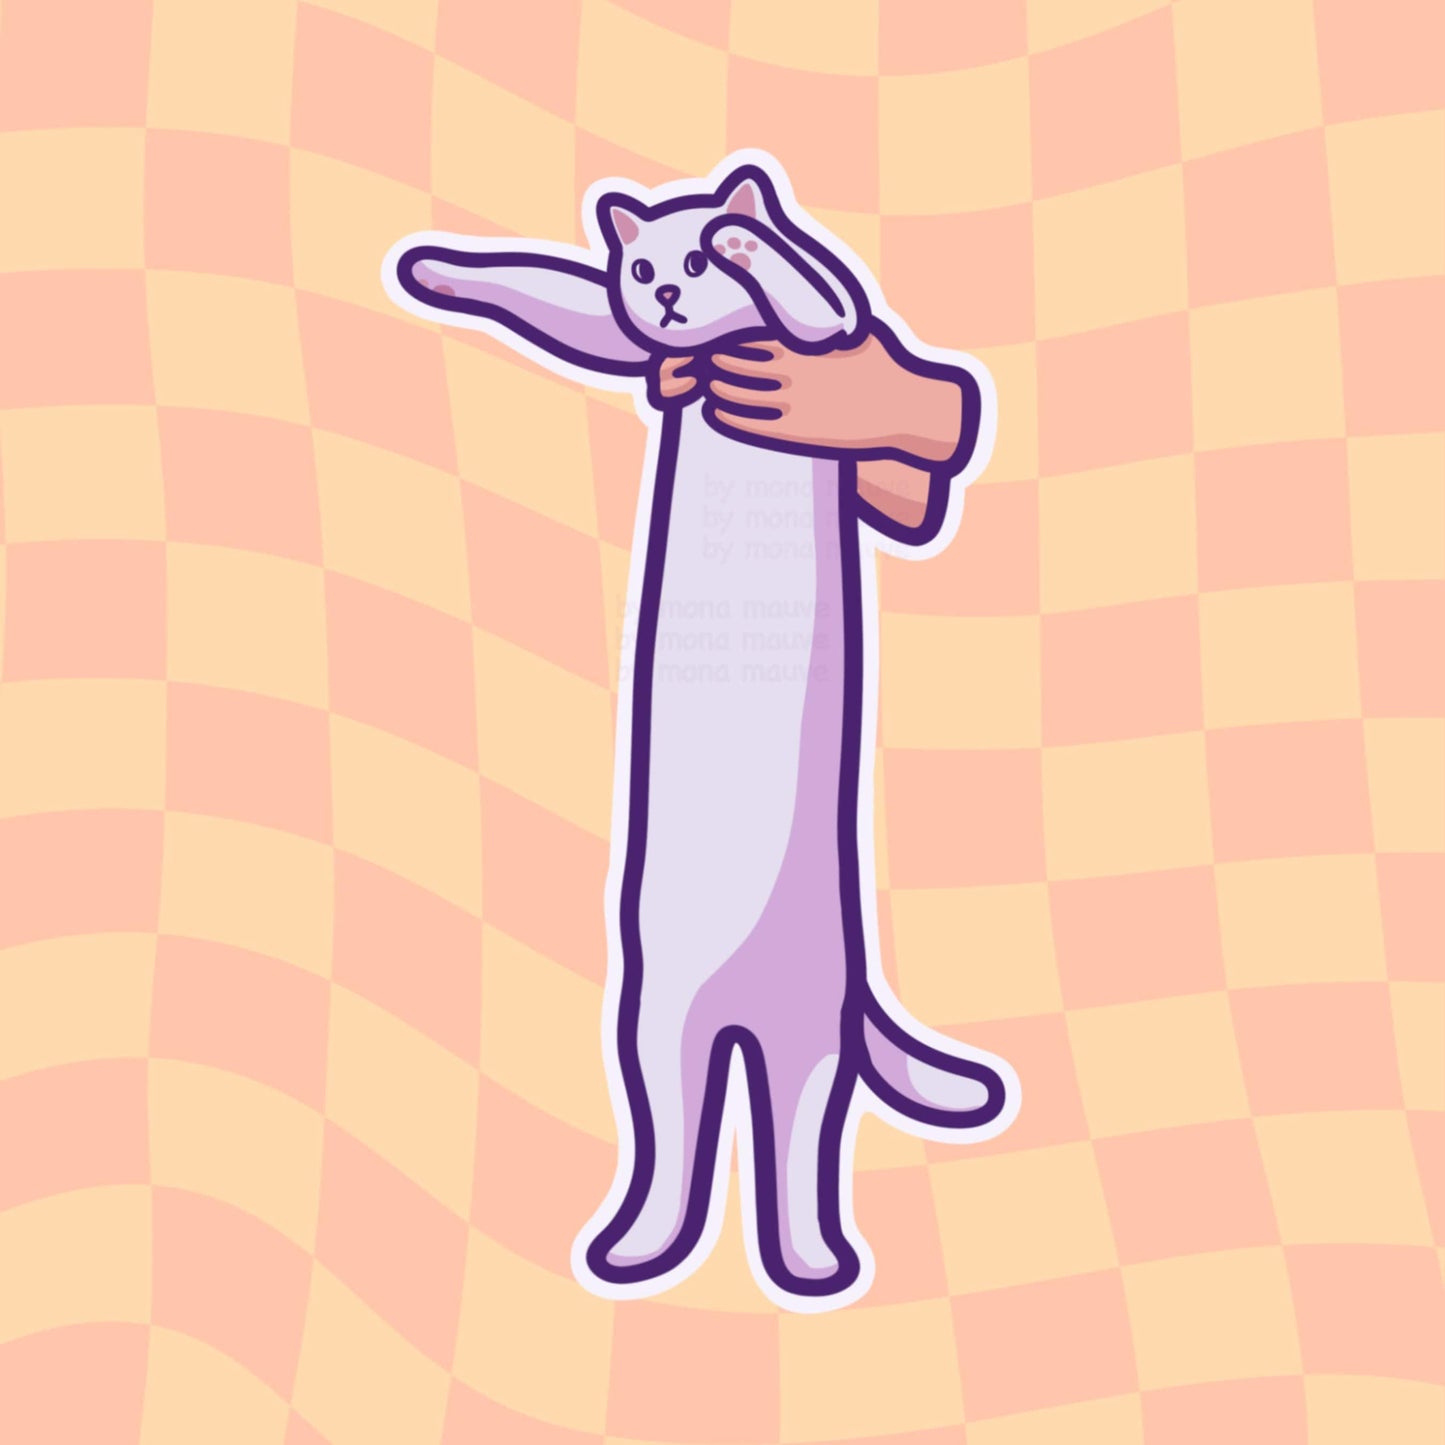 Long Cat Meme Vinyl Sticker | Cute Cat Meme | Kawaii Waterproof Sticker for Water Bottle, Phone, Laptop, Bumper, Luggage